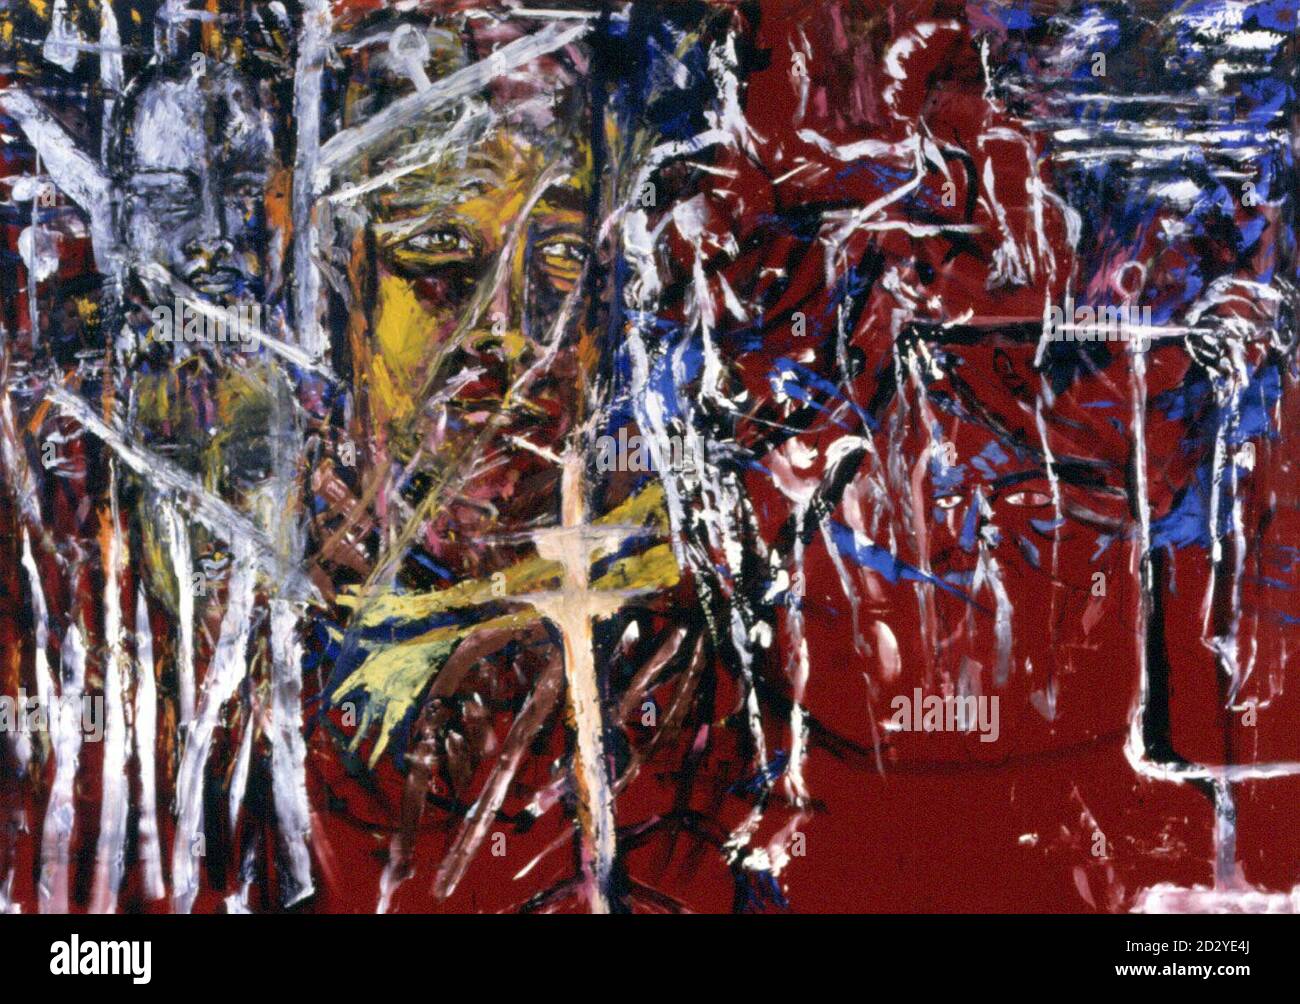 Homo Painting' de Julian Schnalbel (né en 1951) 1981 - fait partie d'une collection de 2.6 millions d'œuvres d'art du XXe siècle qui a été donnée à la Tate Gallery de Londres par la collectionneuse Janet Wolfson de Botton, comme un geste de soutien à la création de sa galerie Bankside,ouverture prévue en 2000.Les peintures, qui comprennent également des œuvres d'Andy Warhol, de Cindy Sherman et de Gilbert et George, ont été exposées pour la première fois à la galerie aujourd'hui (lundi).Voir PA Story ARTS Tate.Galerie de photos. Banque D'Images